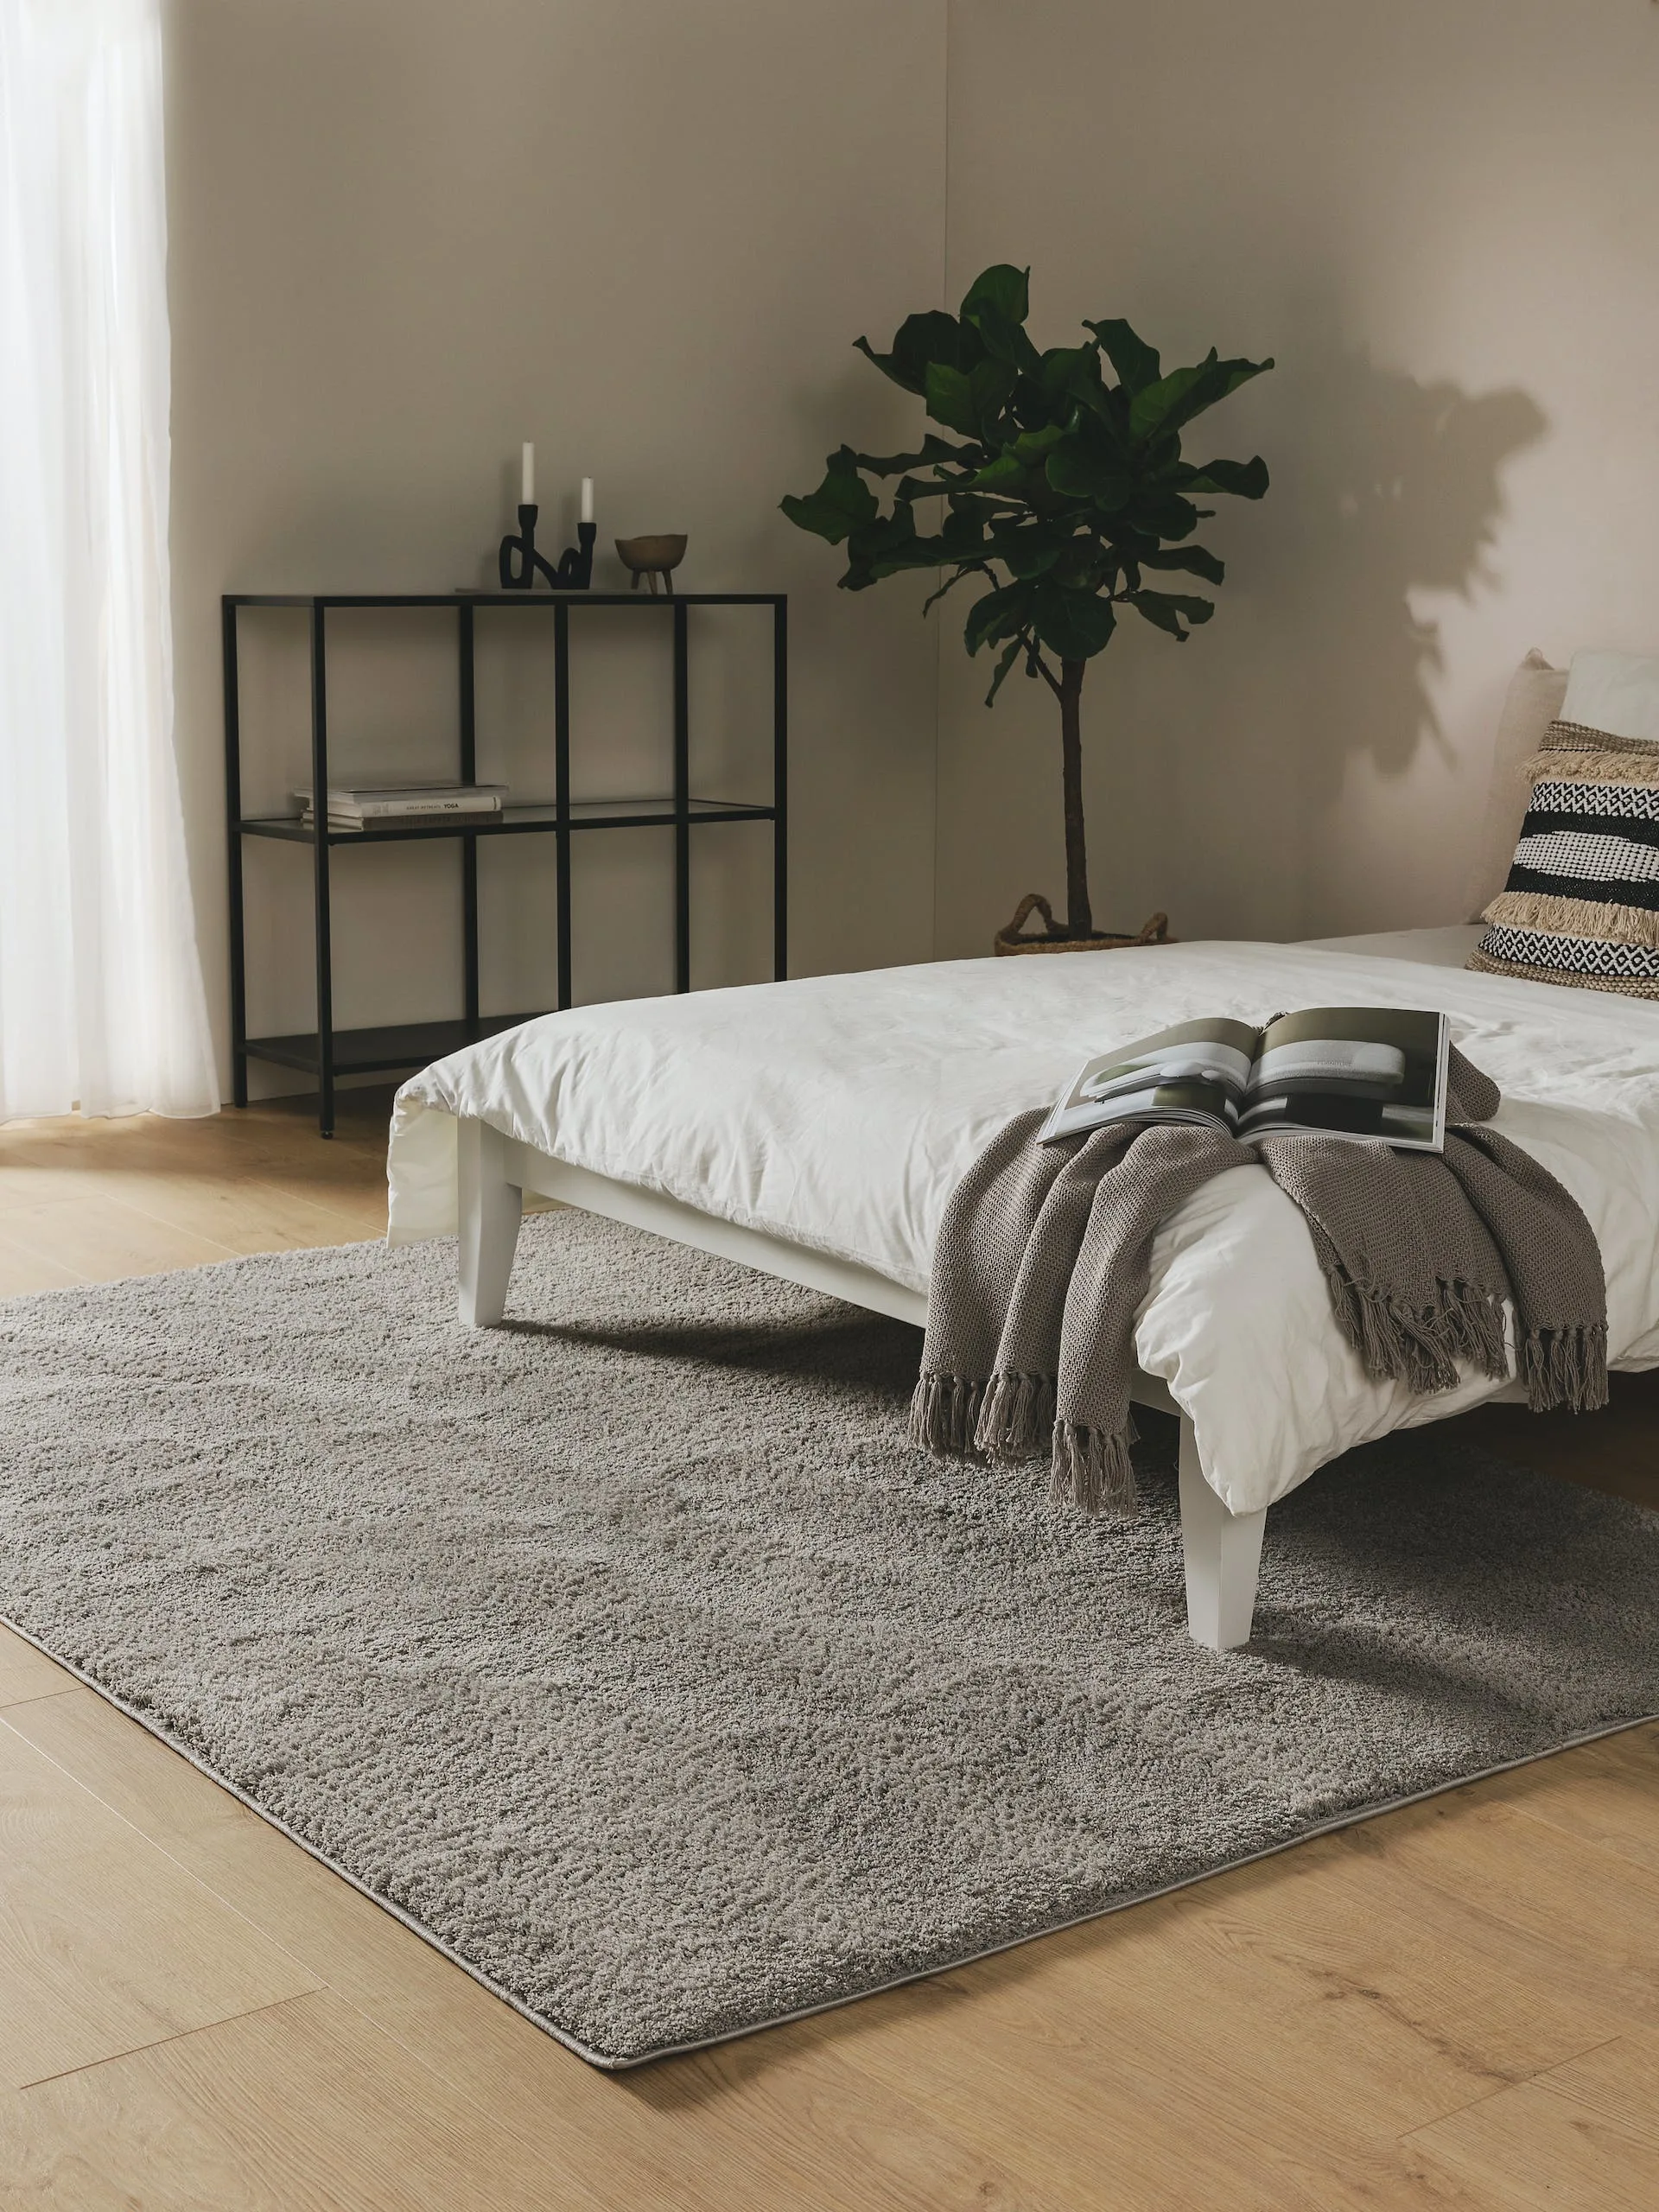 Schlafzimmereinrichtung im Industrial Chic mit weißem Bett, schwarzem Regal aus Metall und einem großen, grauen Shaggy-Teppich als Bettvorleger unter dem Bett